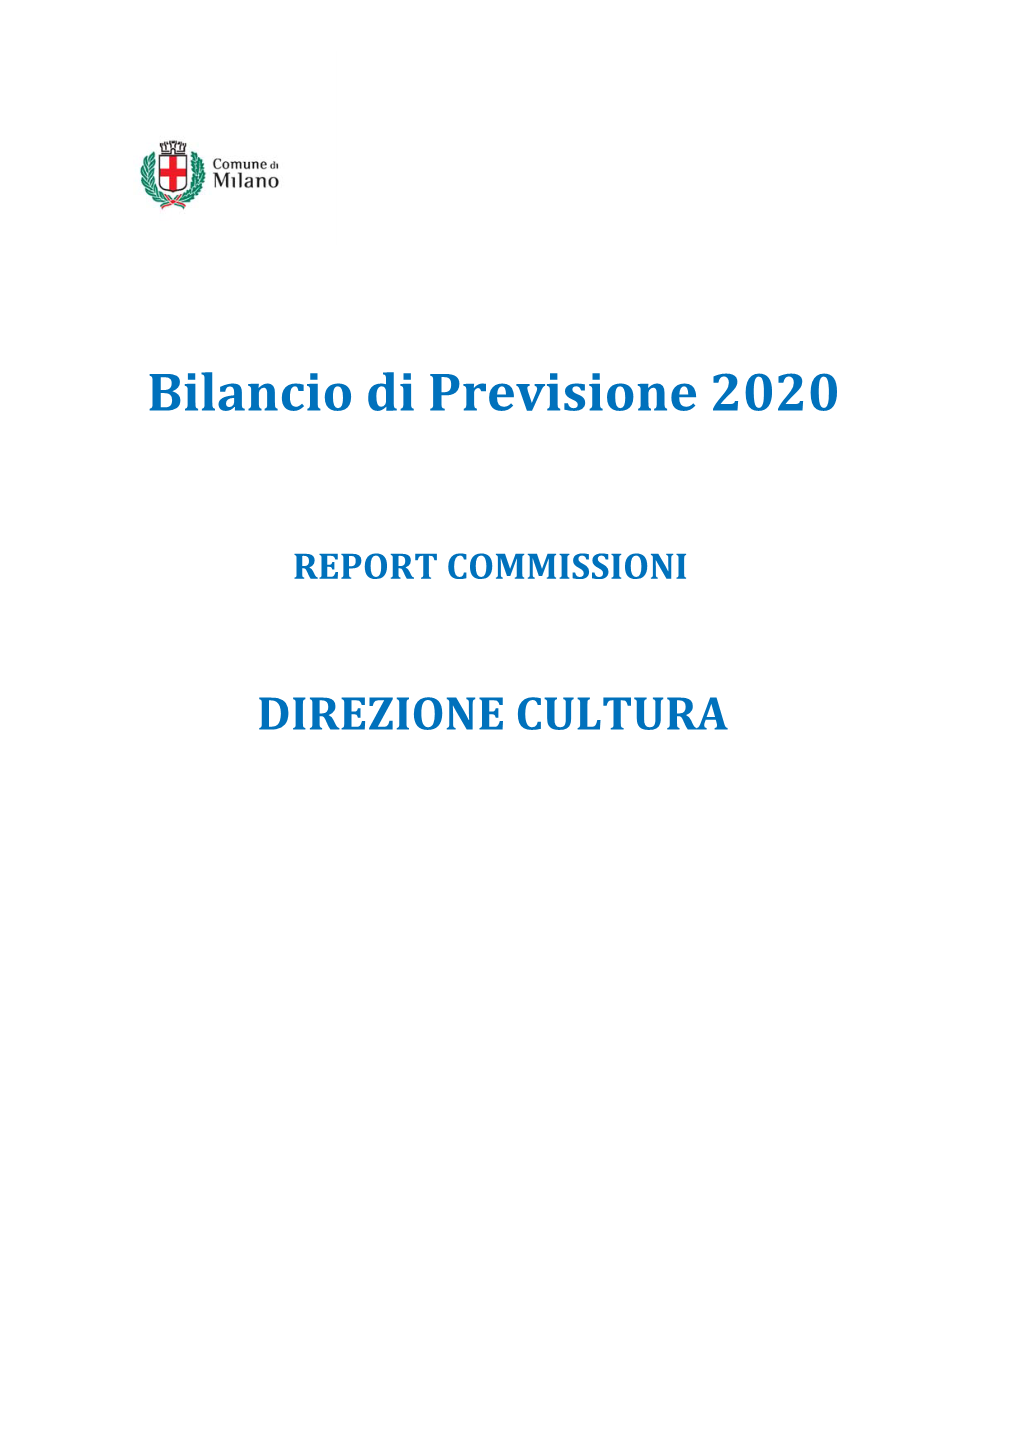 Bilancio Di Previsione 2020-Direzione Cultura (Pdf